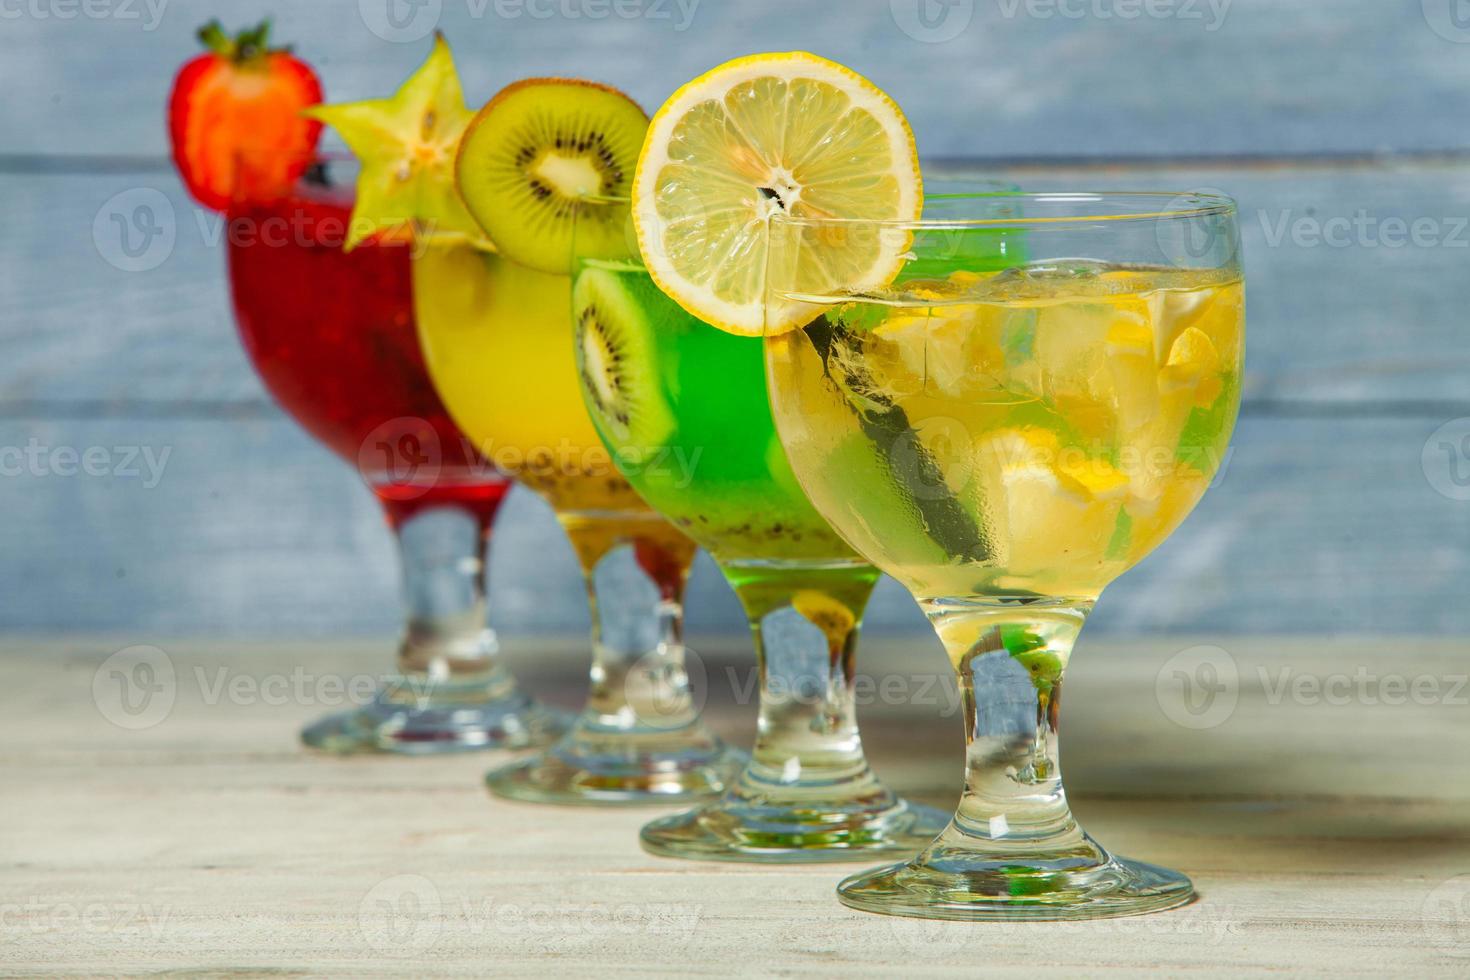 divers cocktails alcoolisés sur fond blanc. cocktails colorés se bouchent. cocktail de jus de fruits. cocktails assortis. verres de boissons aux fruits avec des glaçons sur la table au café photo